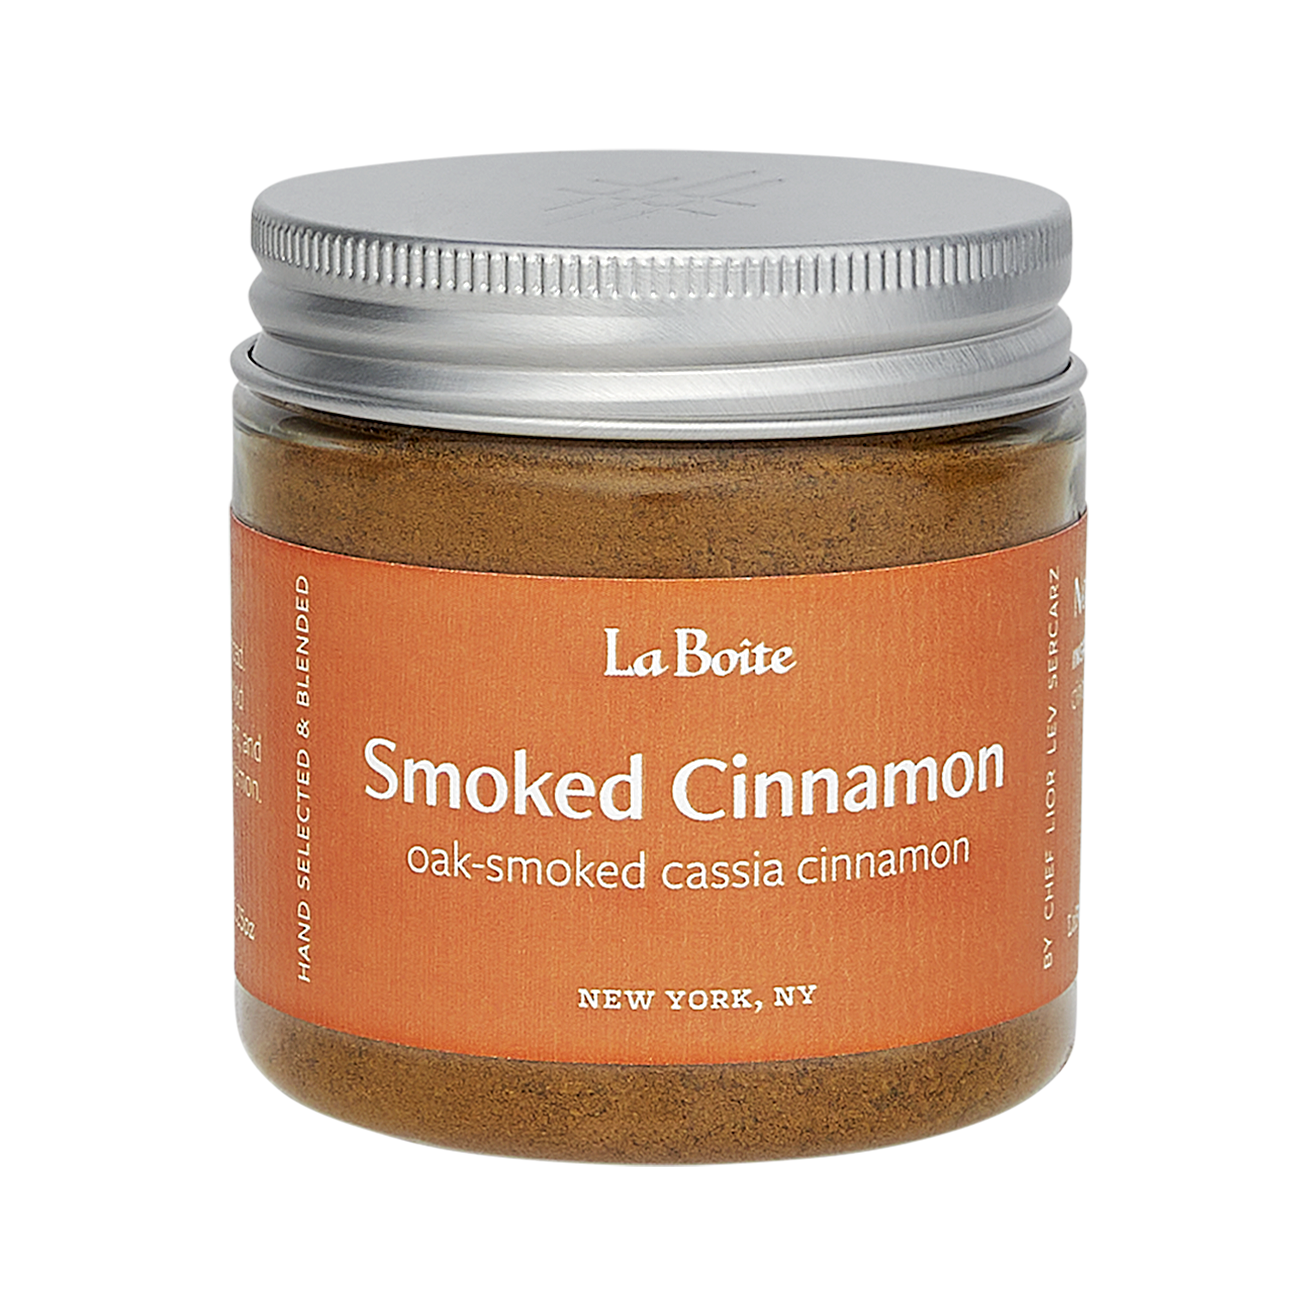 Smoked Cinnamon - Smoky Mountain Spice Factory